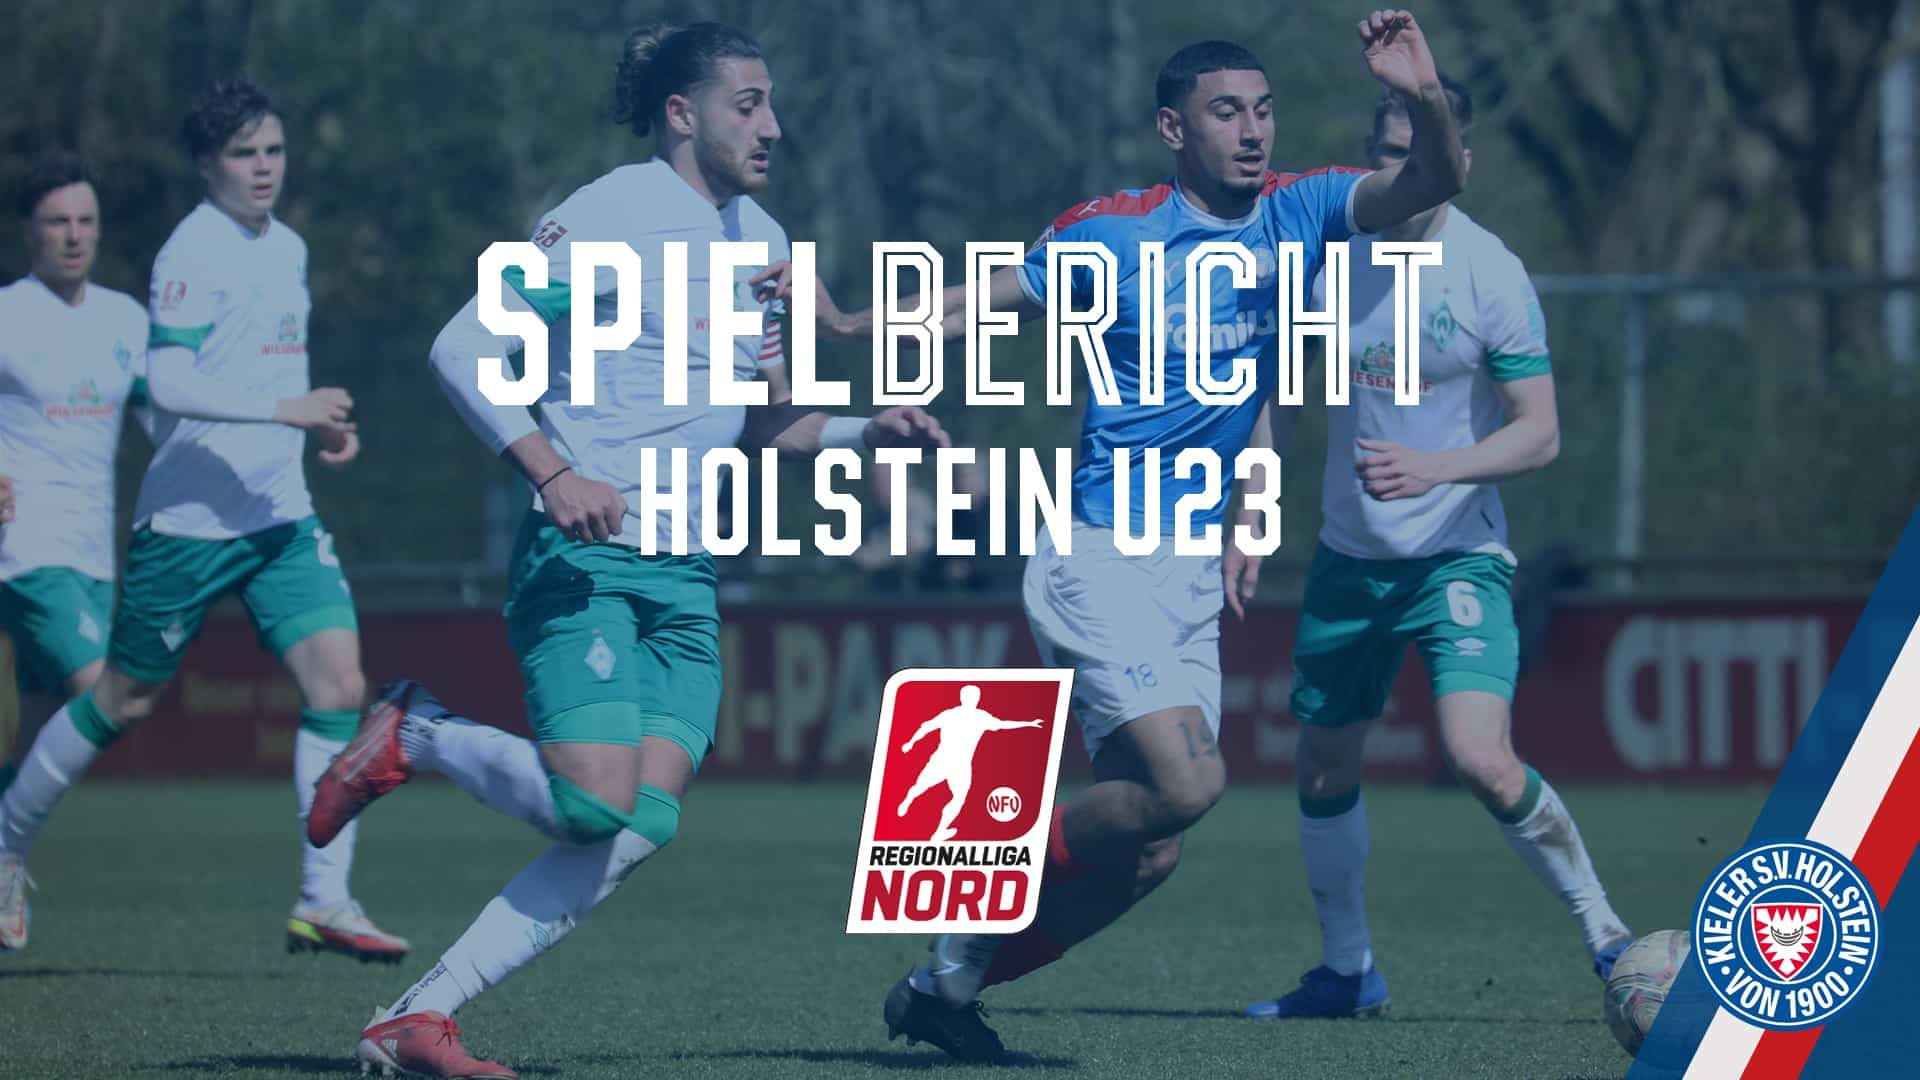 Spielbericht_U23 - Bremen